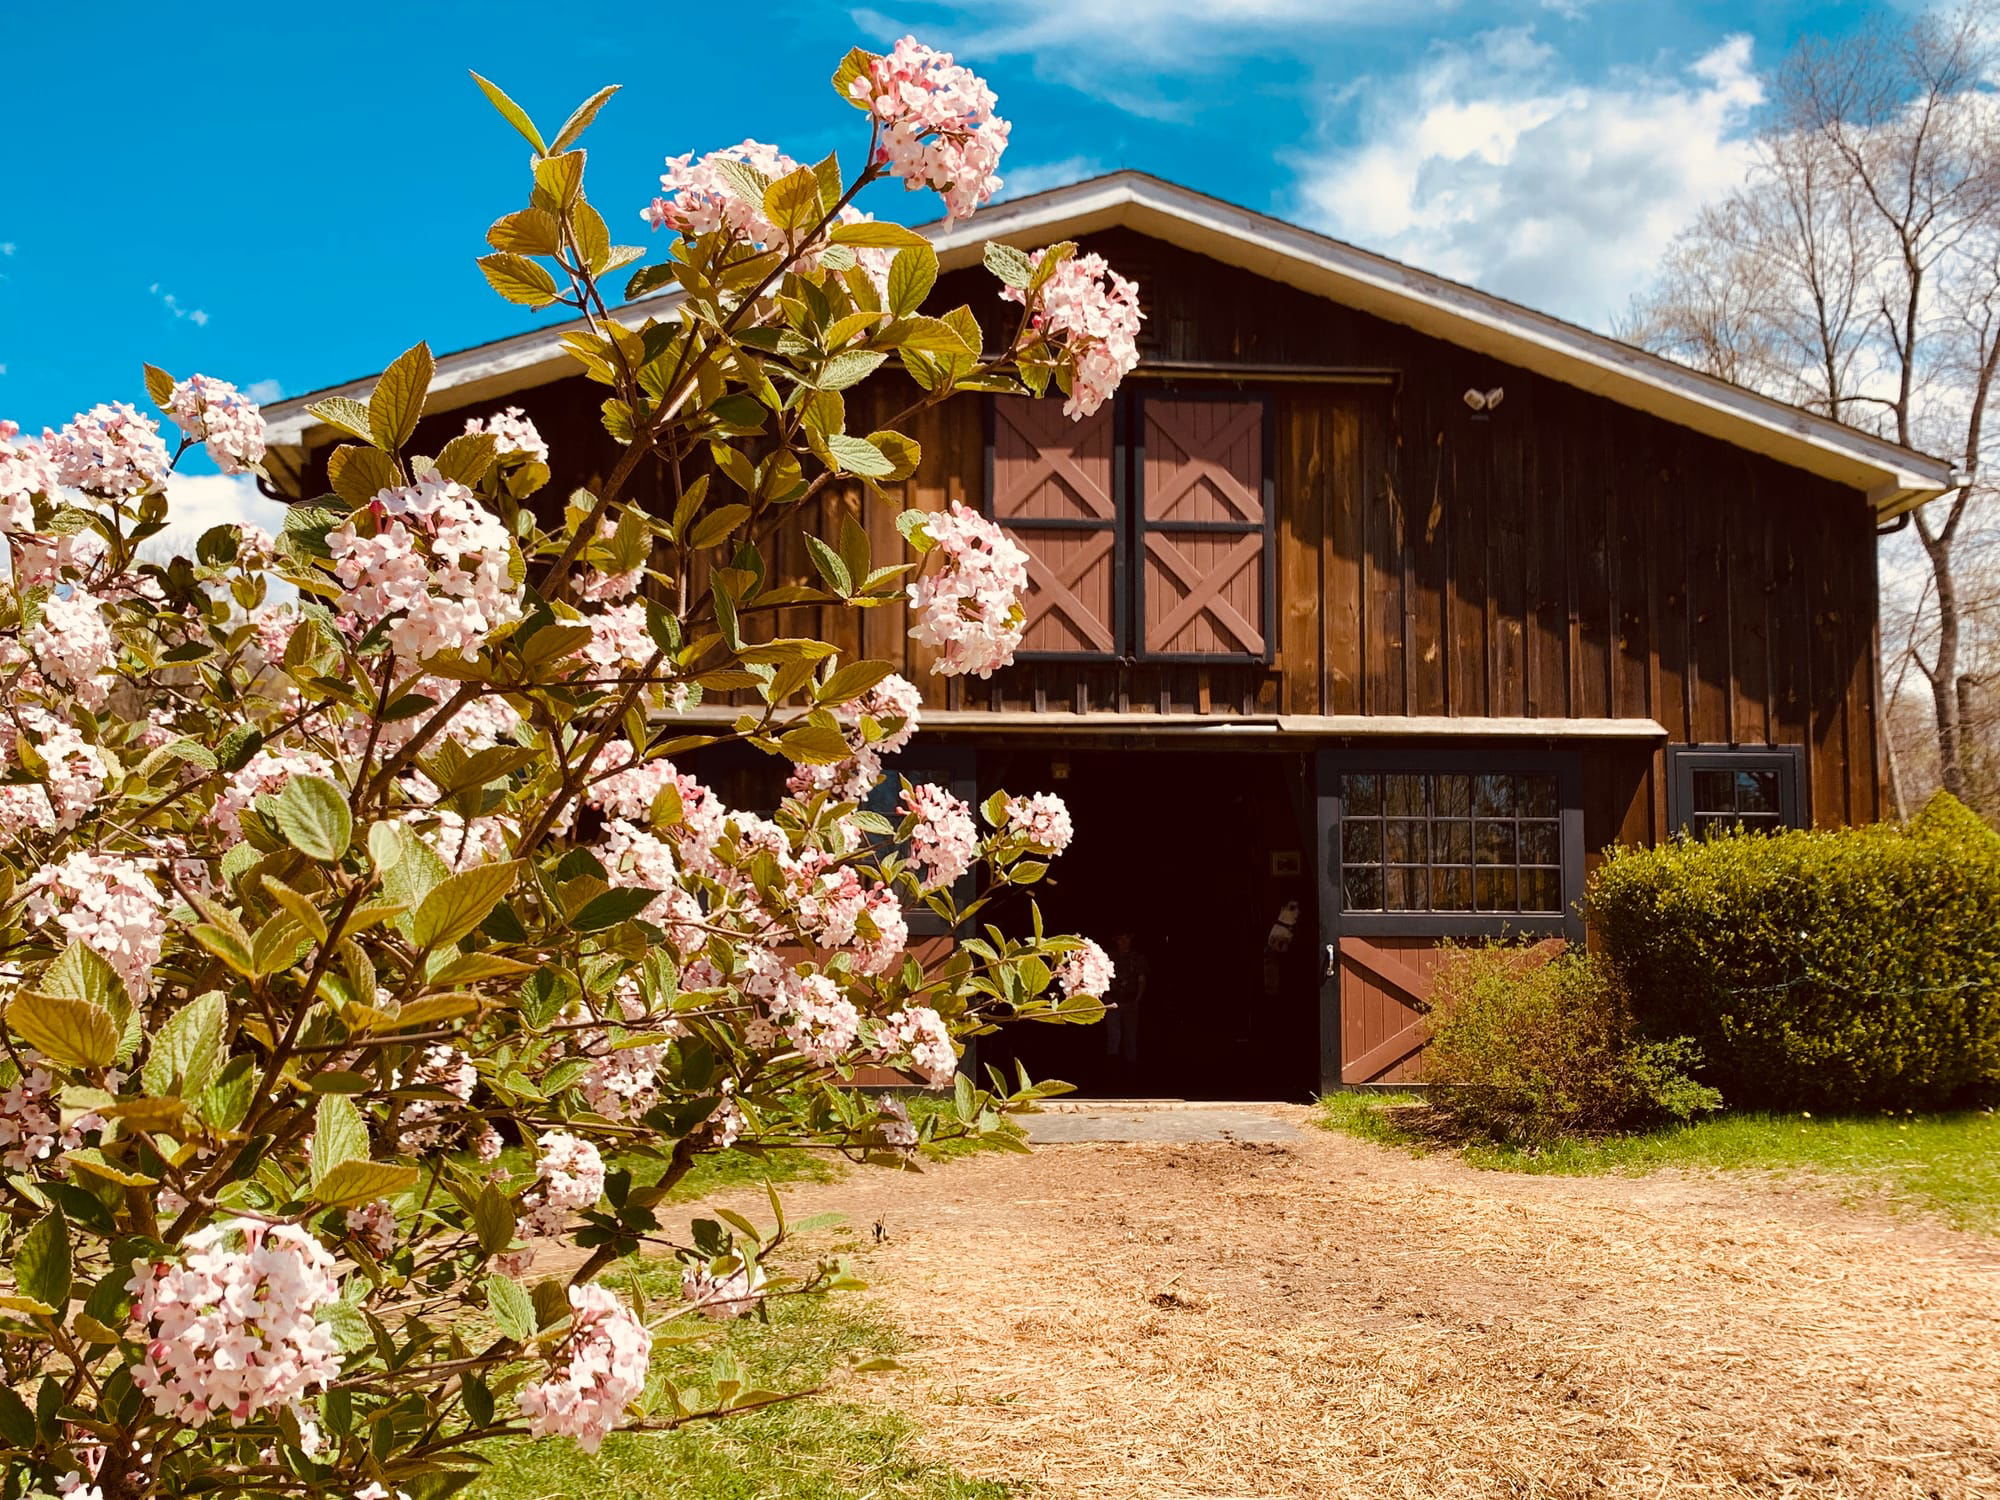 Spring at the barn